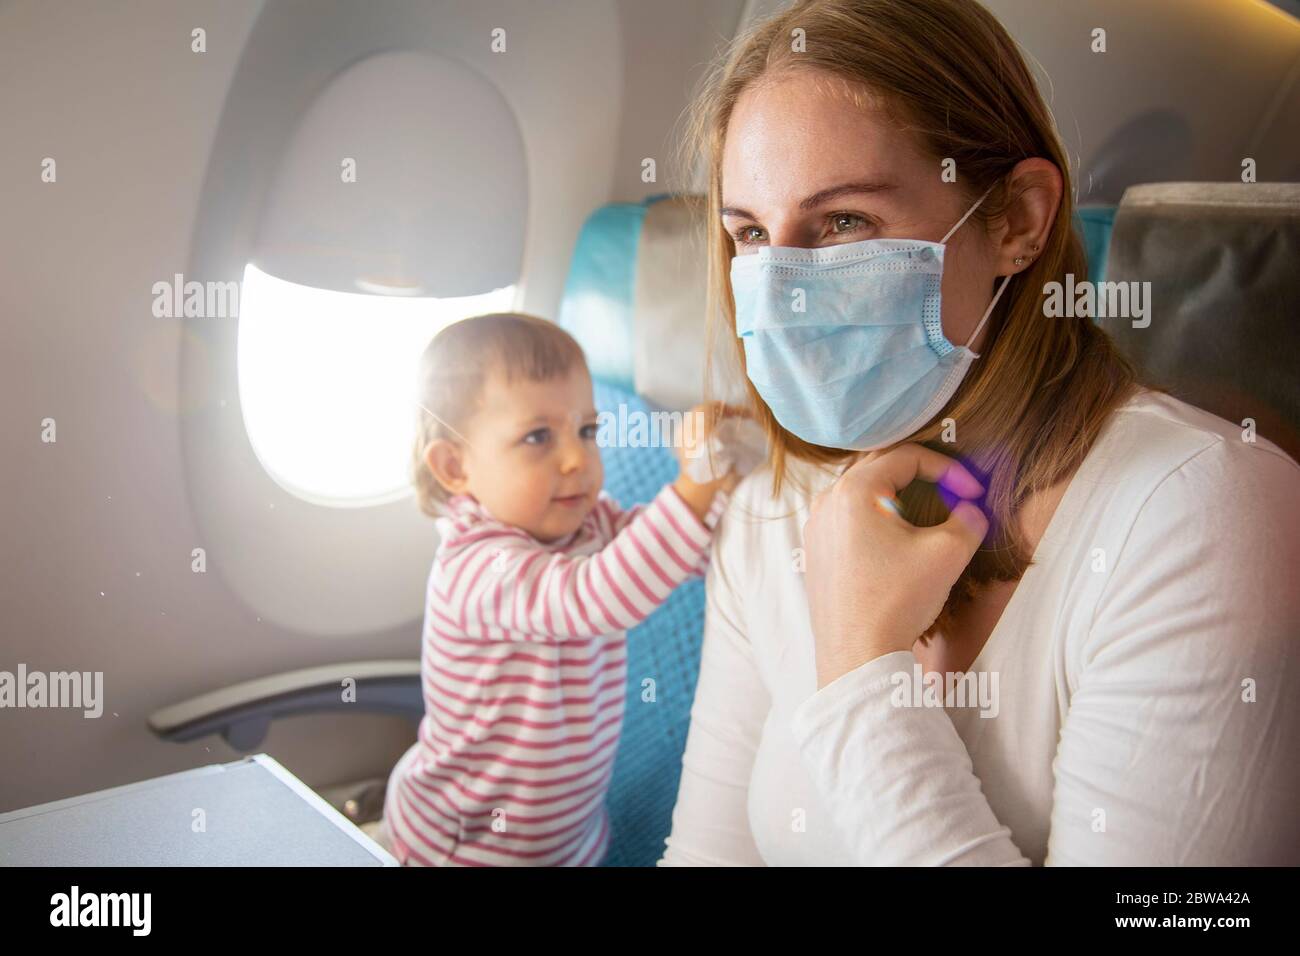 coronavirus covid-19 asia flight safety concept. une jeune mère dans une chaise d'avion dans un masque respiratoire médical, un bébé mignon est assis à côté d'elle et Banque D'Images